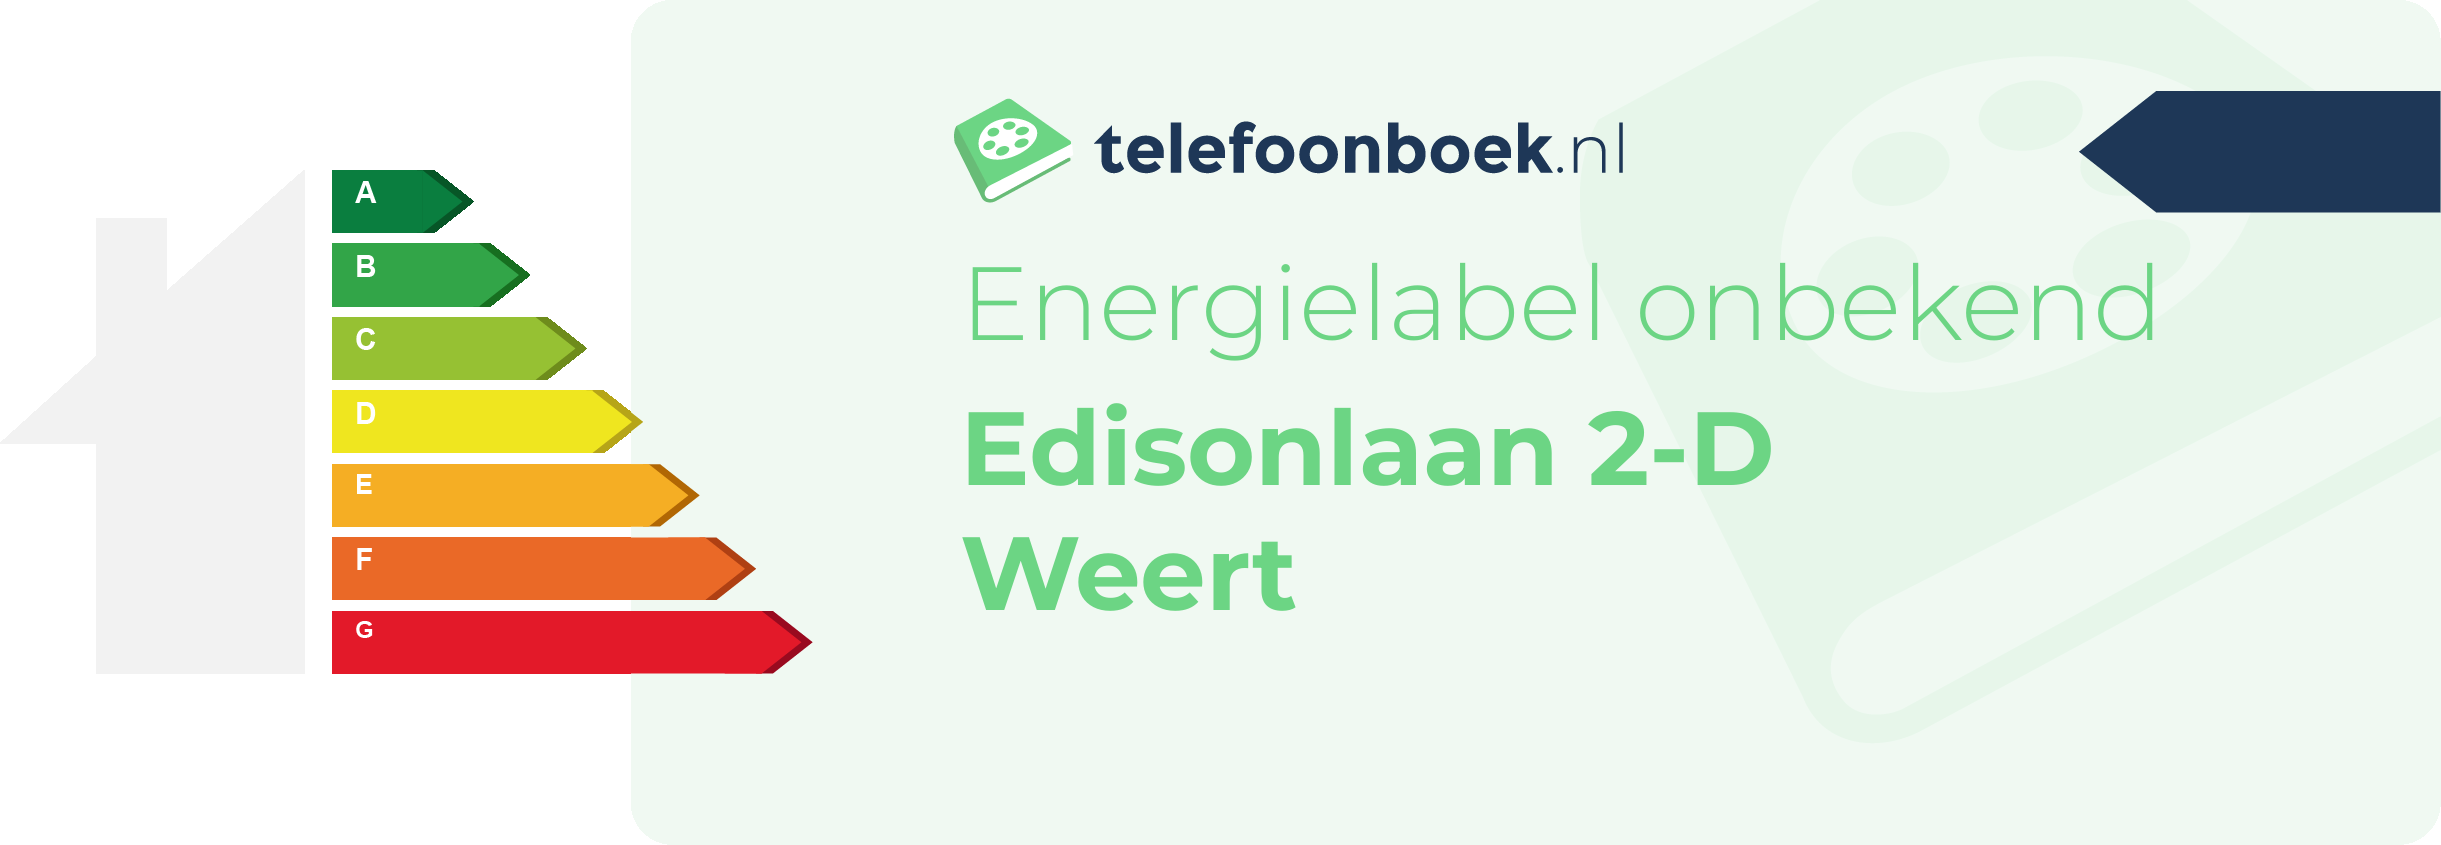 Energielabel Edisonlaan 2-D Weert